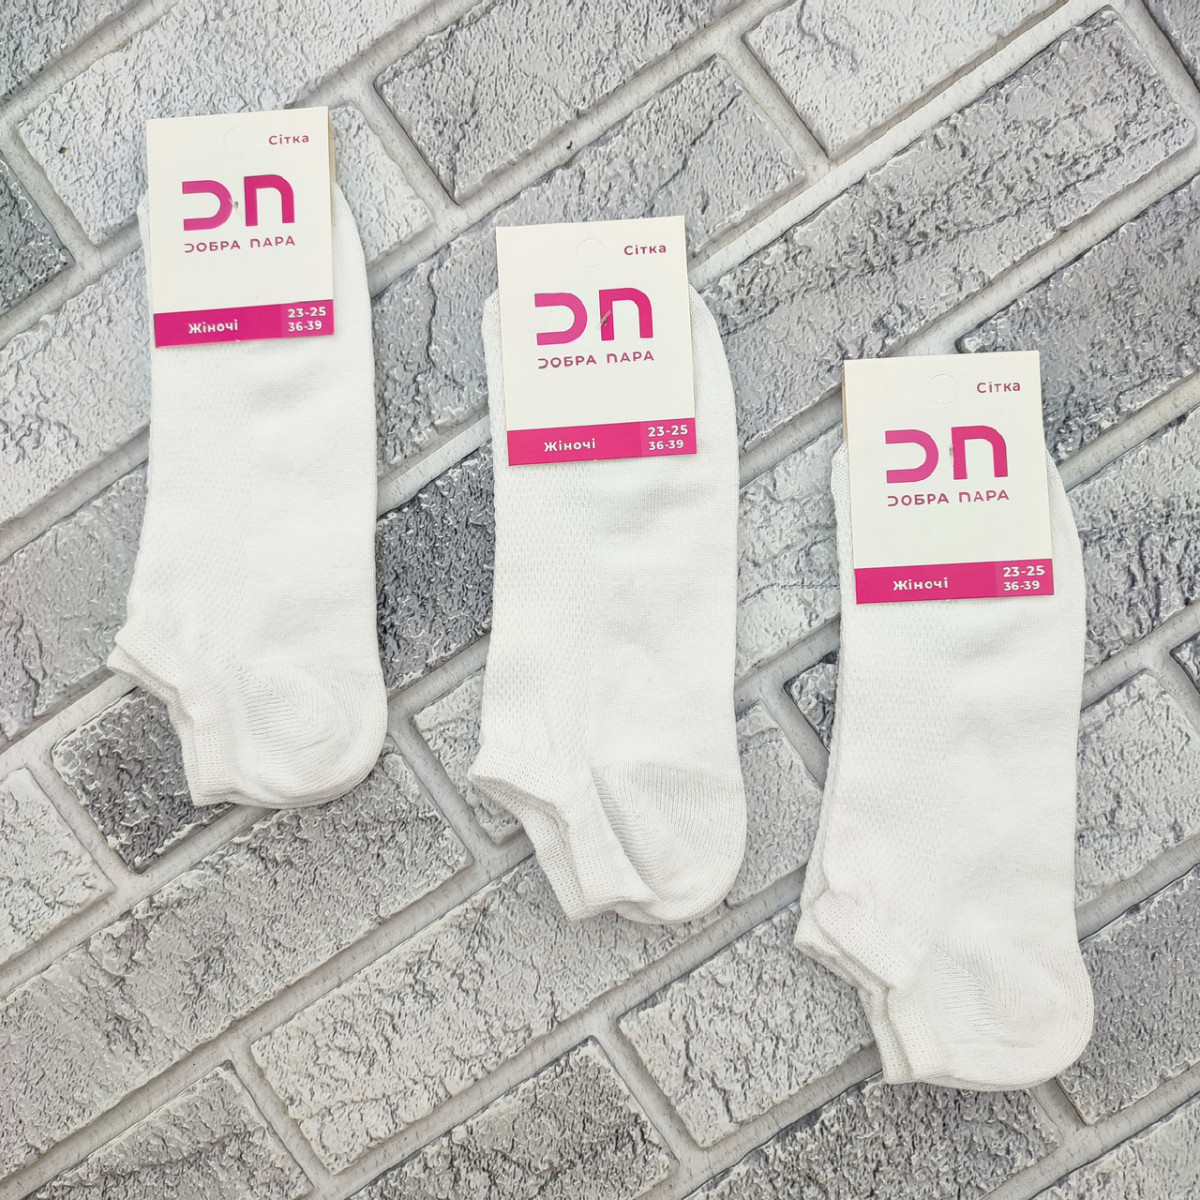 Шкарпетки жіночі короткі літо сітка р.23-25 (36-39) білі ДОБРА ПАРА 30035112